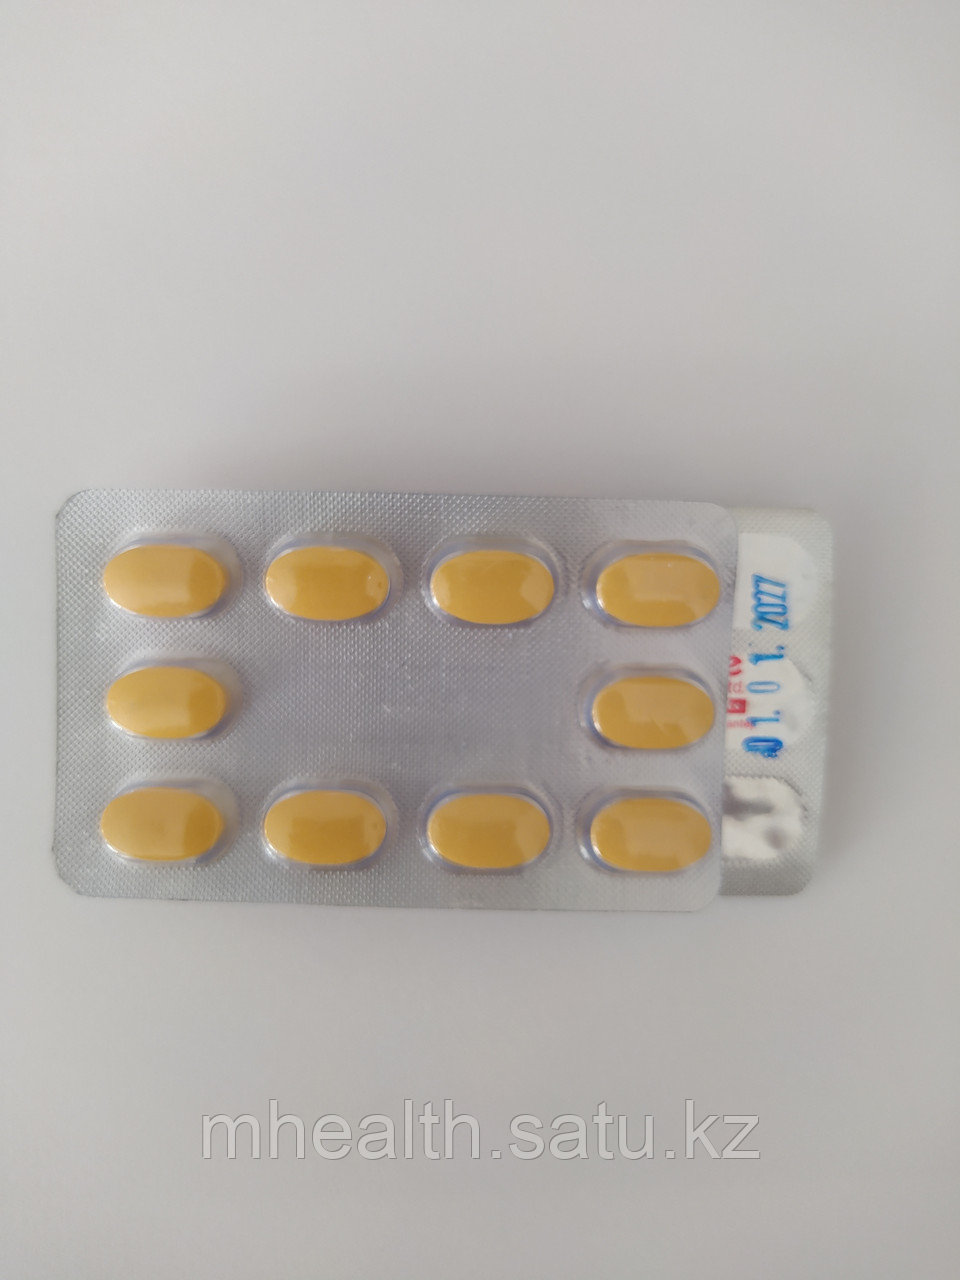 Сиалис тадалафил 20 мг №10 для твердой и долгой эрекции